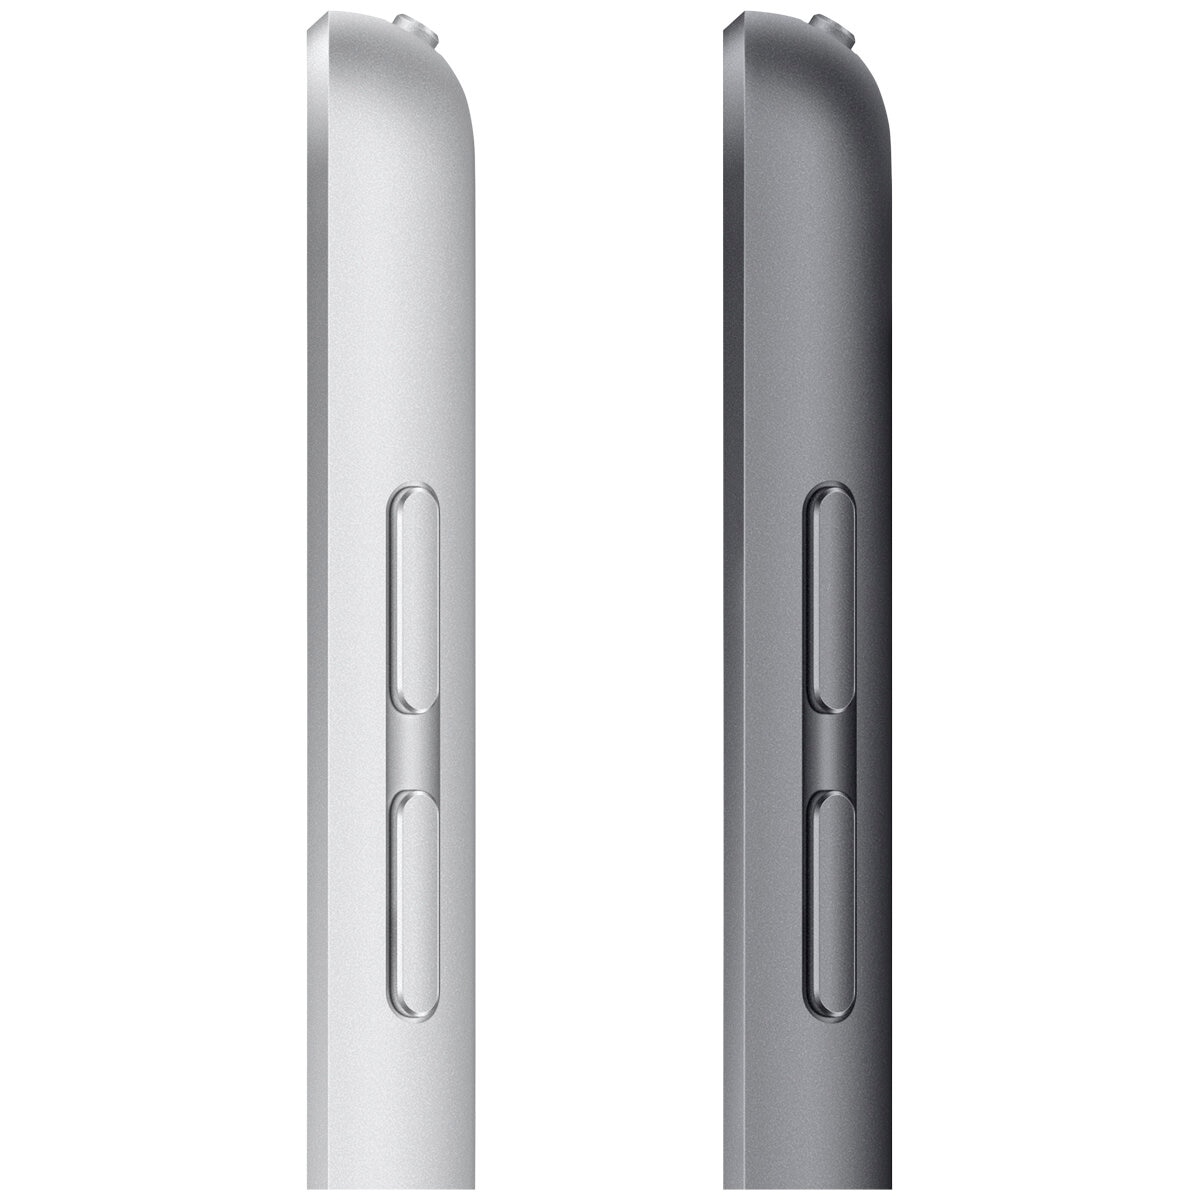 iPad 10.2 Inch Wi-Fi 64GB (9th Generation) Space Grey